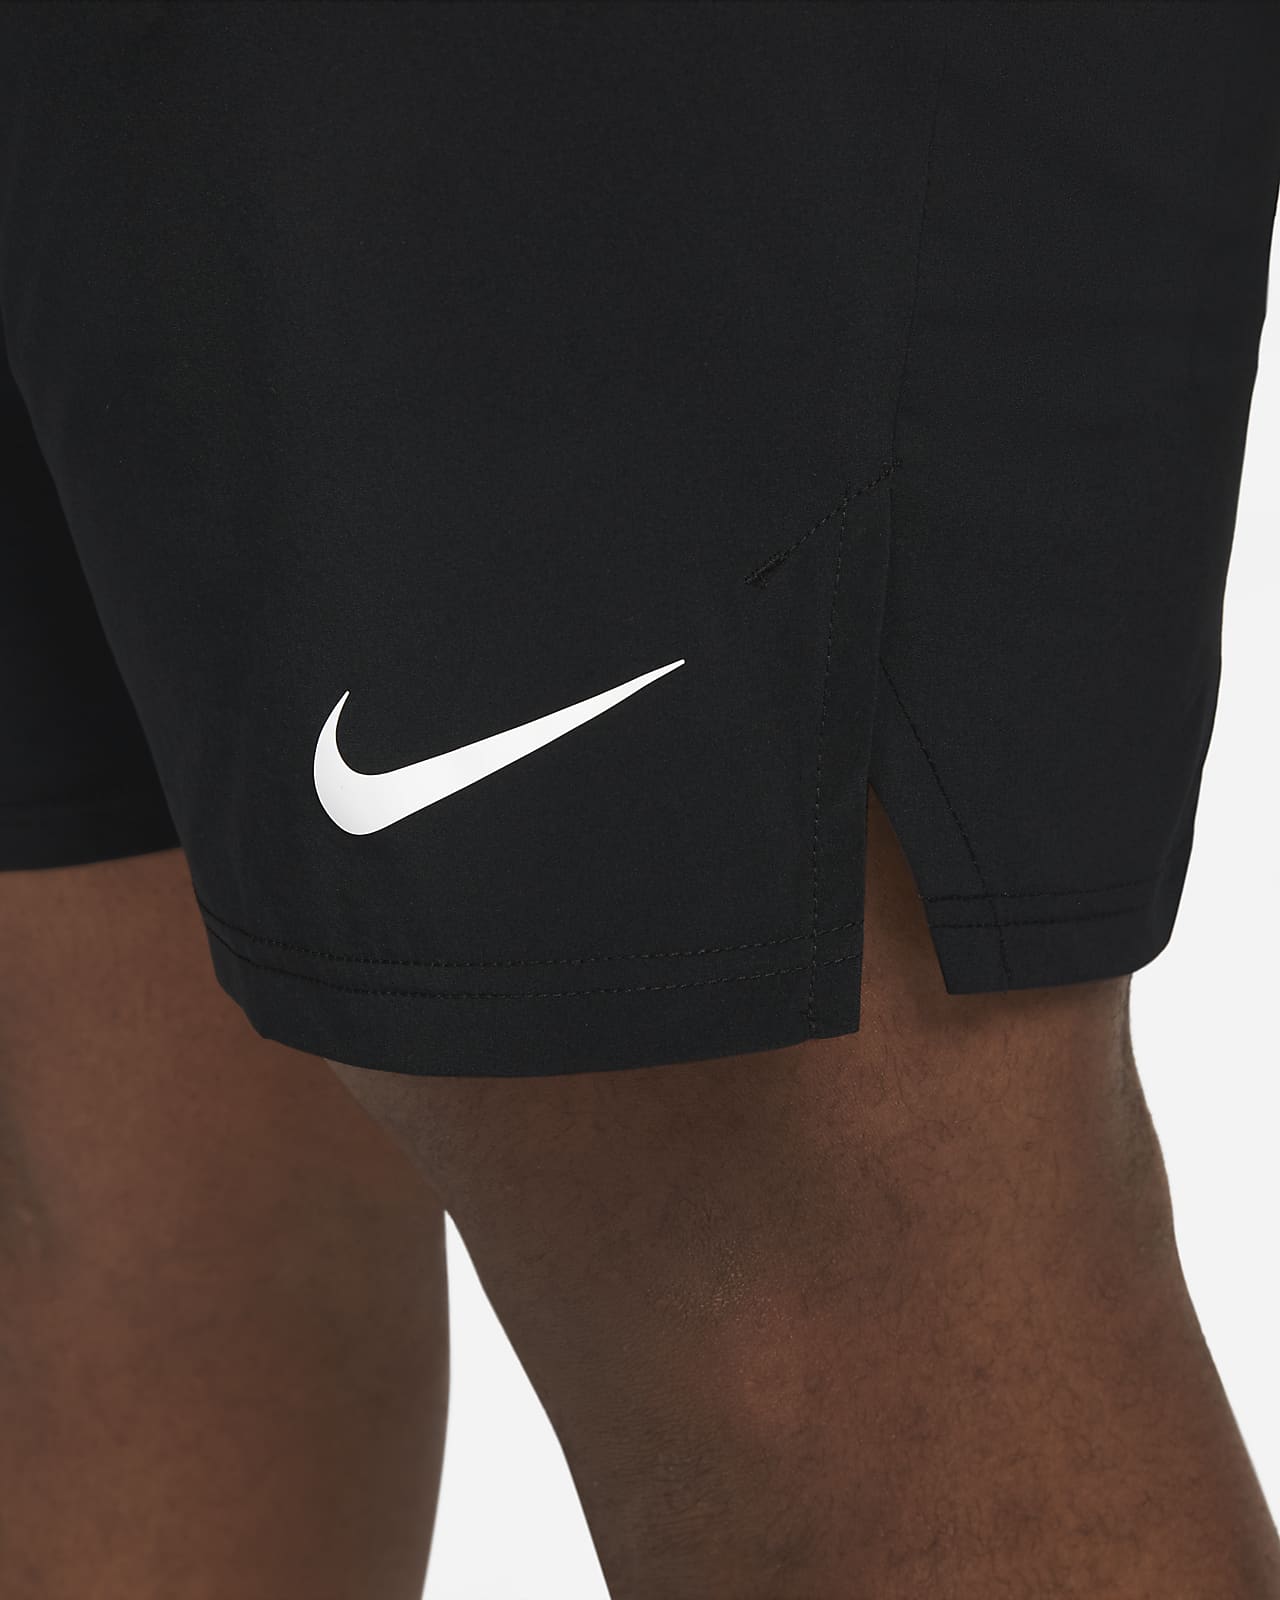 Nike DRI-FIT Shorts Set - Black